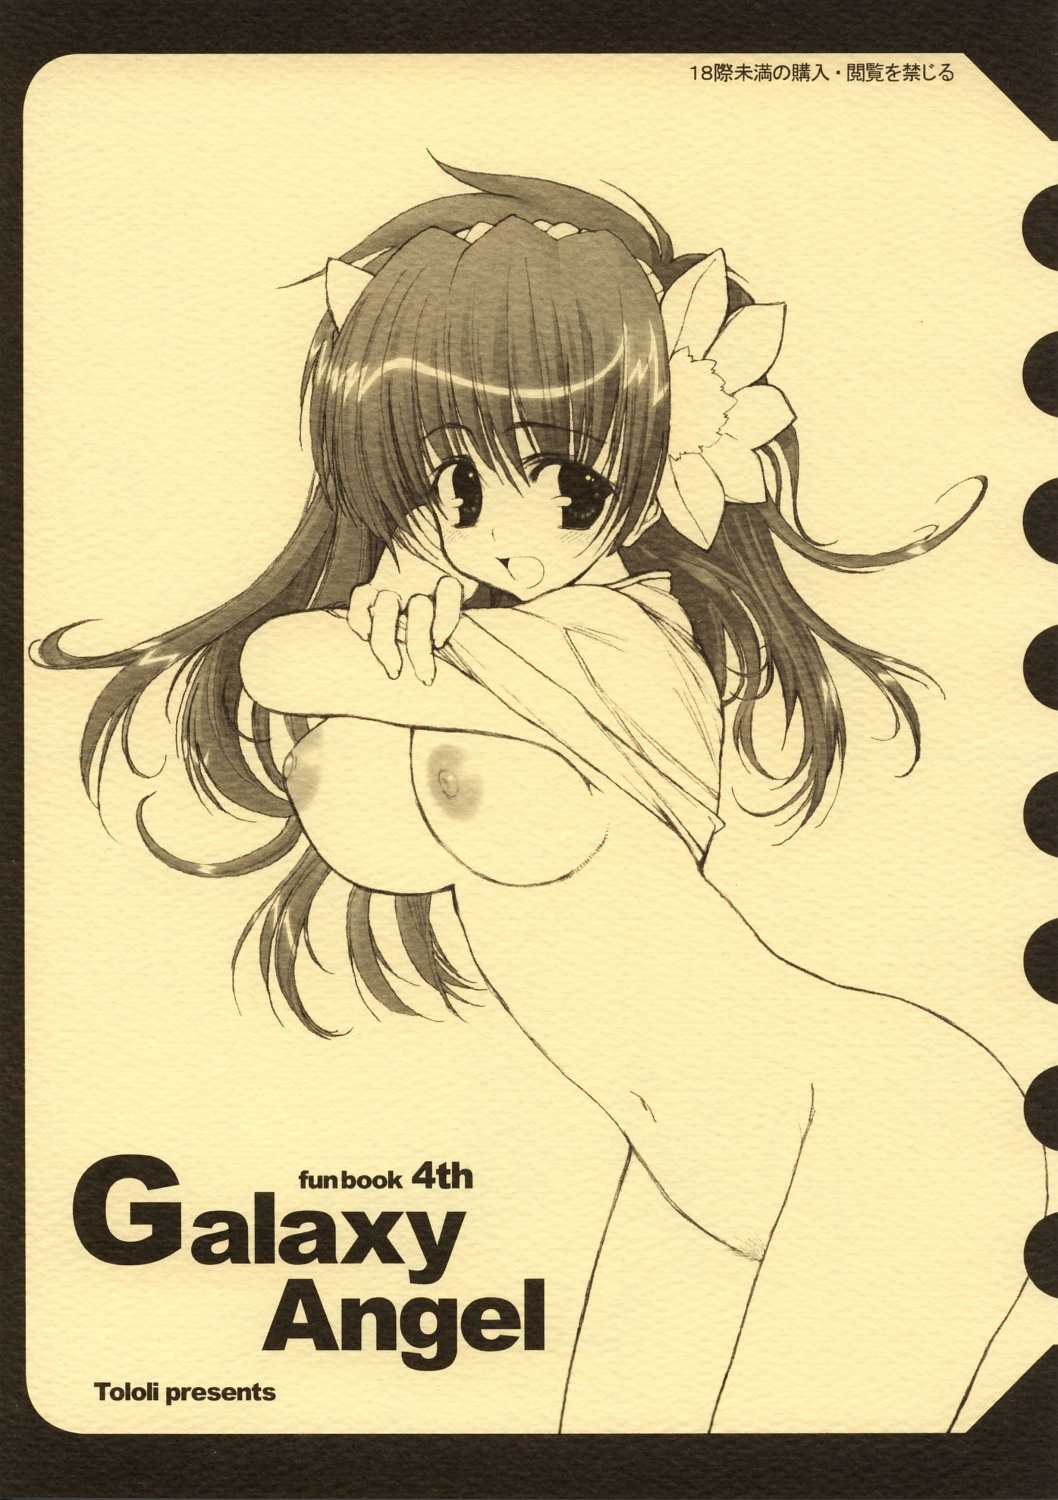 [Tololi] Galaxy Angel Funbook 4th 